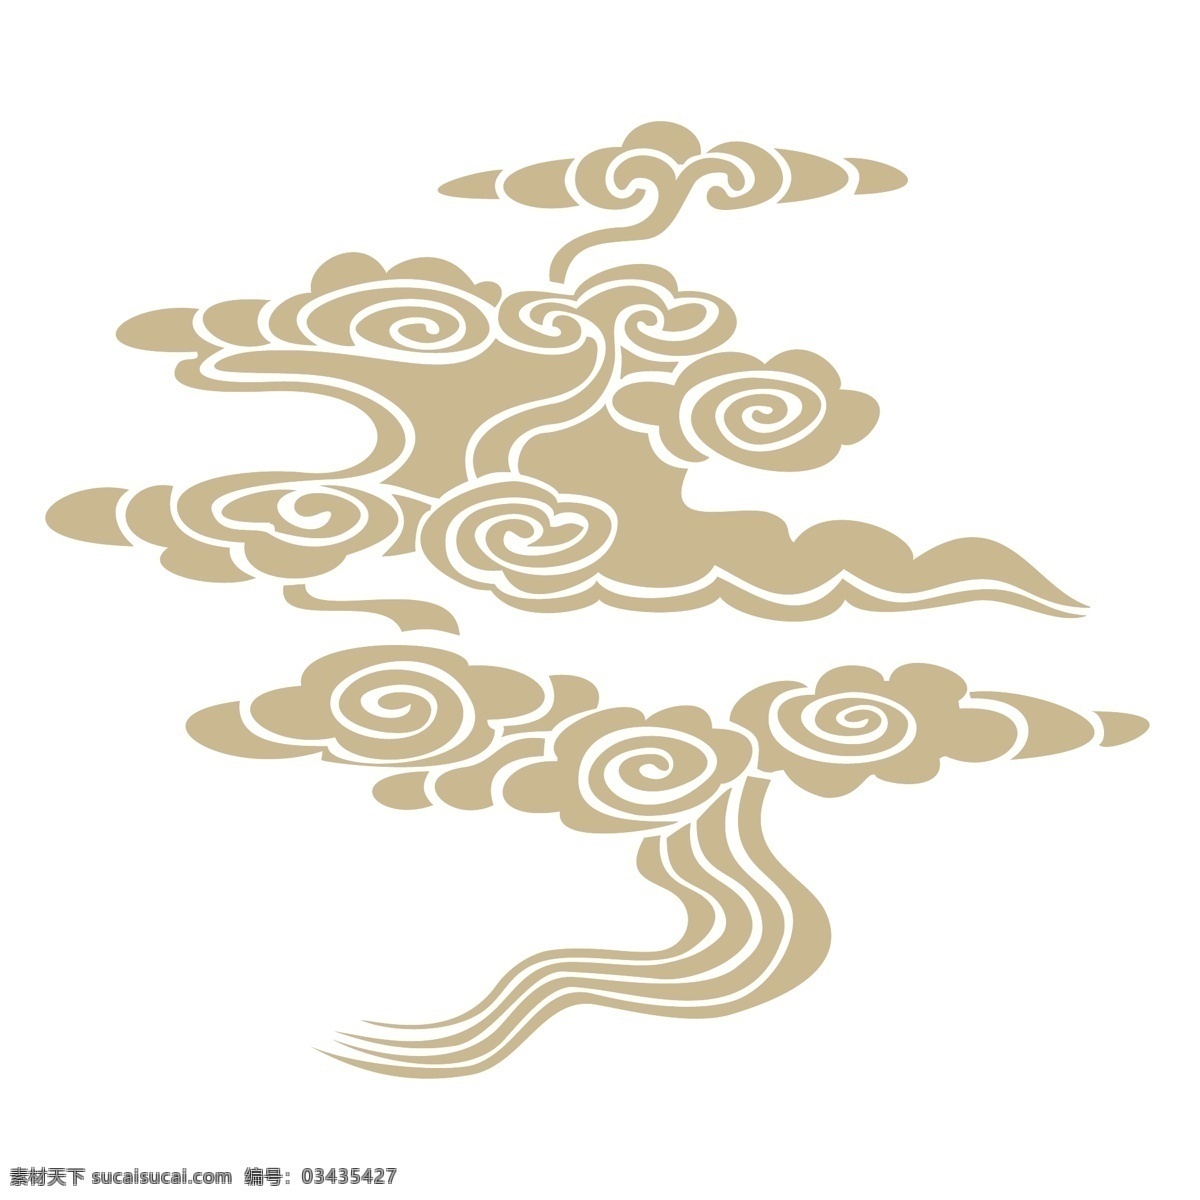 中国 风 传统 云纹 中国风 金色 花纹 图案 波浪 精美 装饰图案 雕刻图案 绘画 服装印花 涂鸦 地砖花纹 地毯花纹 沙发花纹 布艺纹路 文化艺术